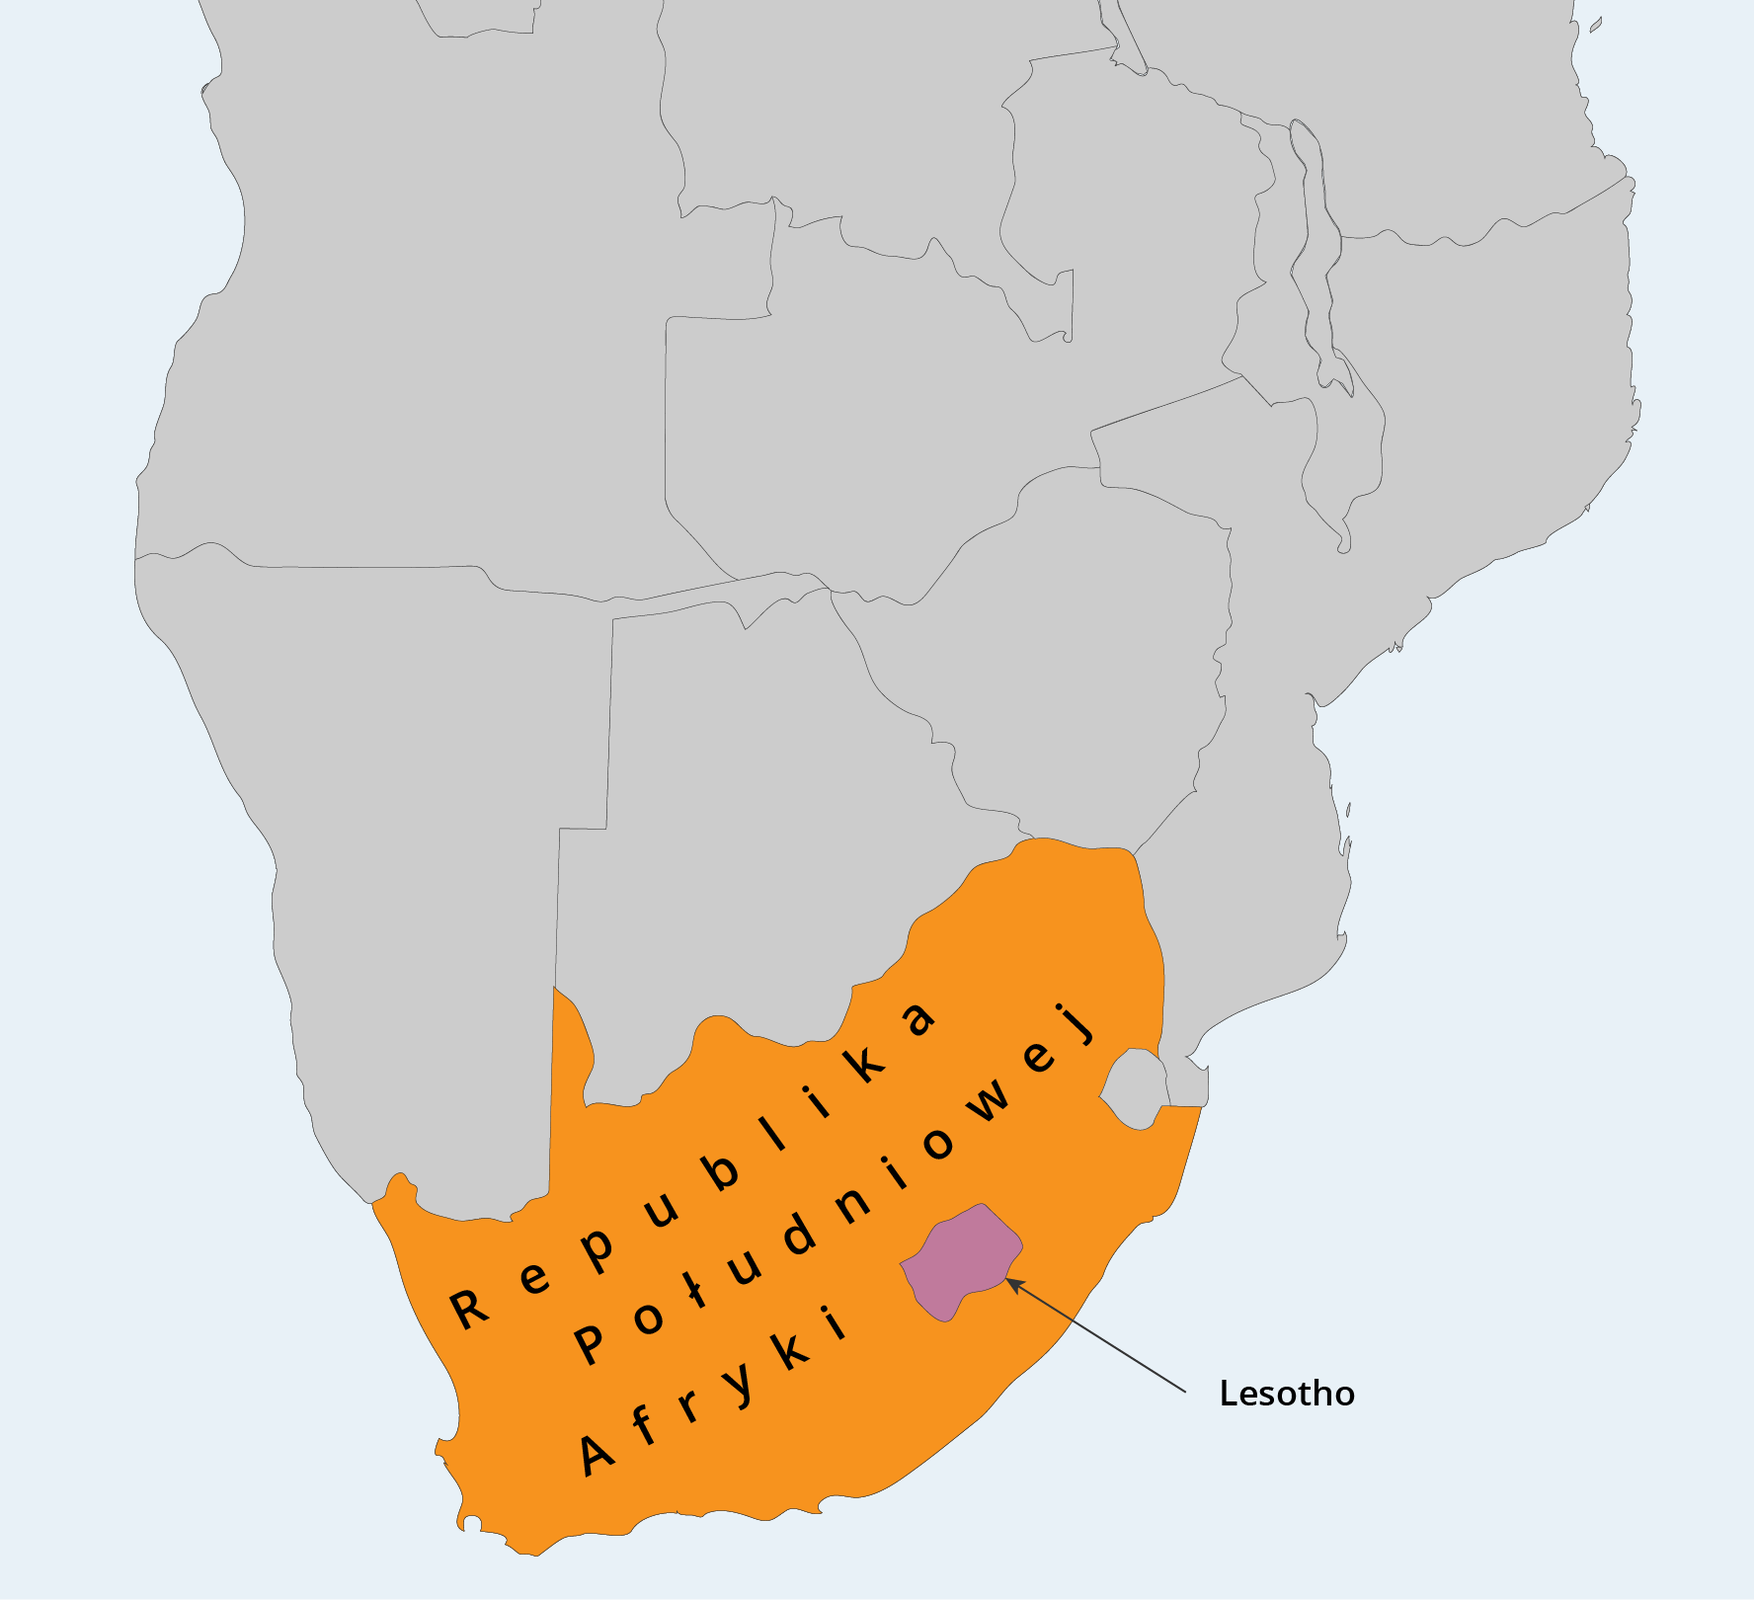 Na fragmencie mapy południa Afryki zaznaczono Republikę Południowej Afryki. We wschodniej części zaznaczono niewielki obszar lesotho.  